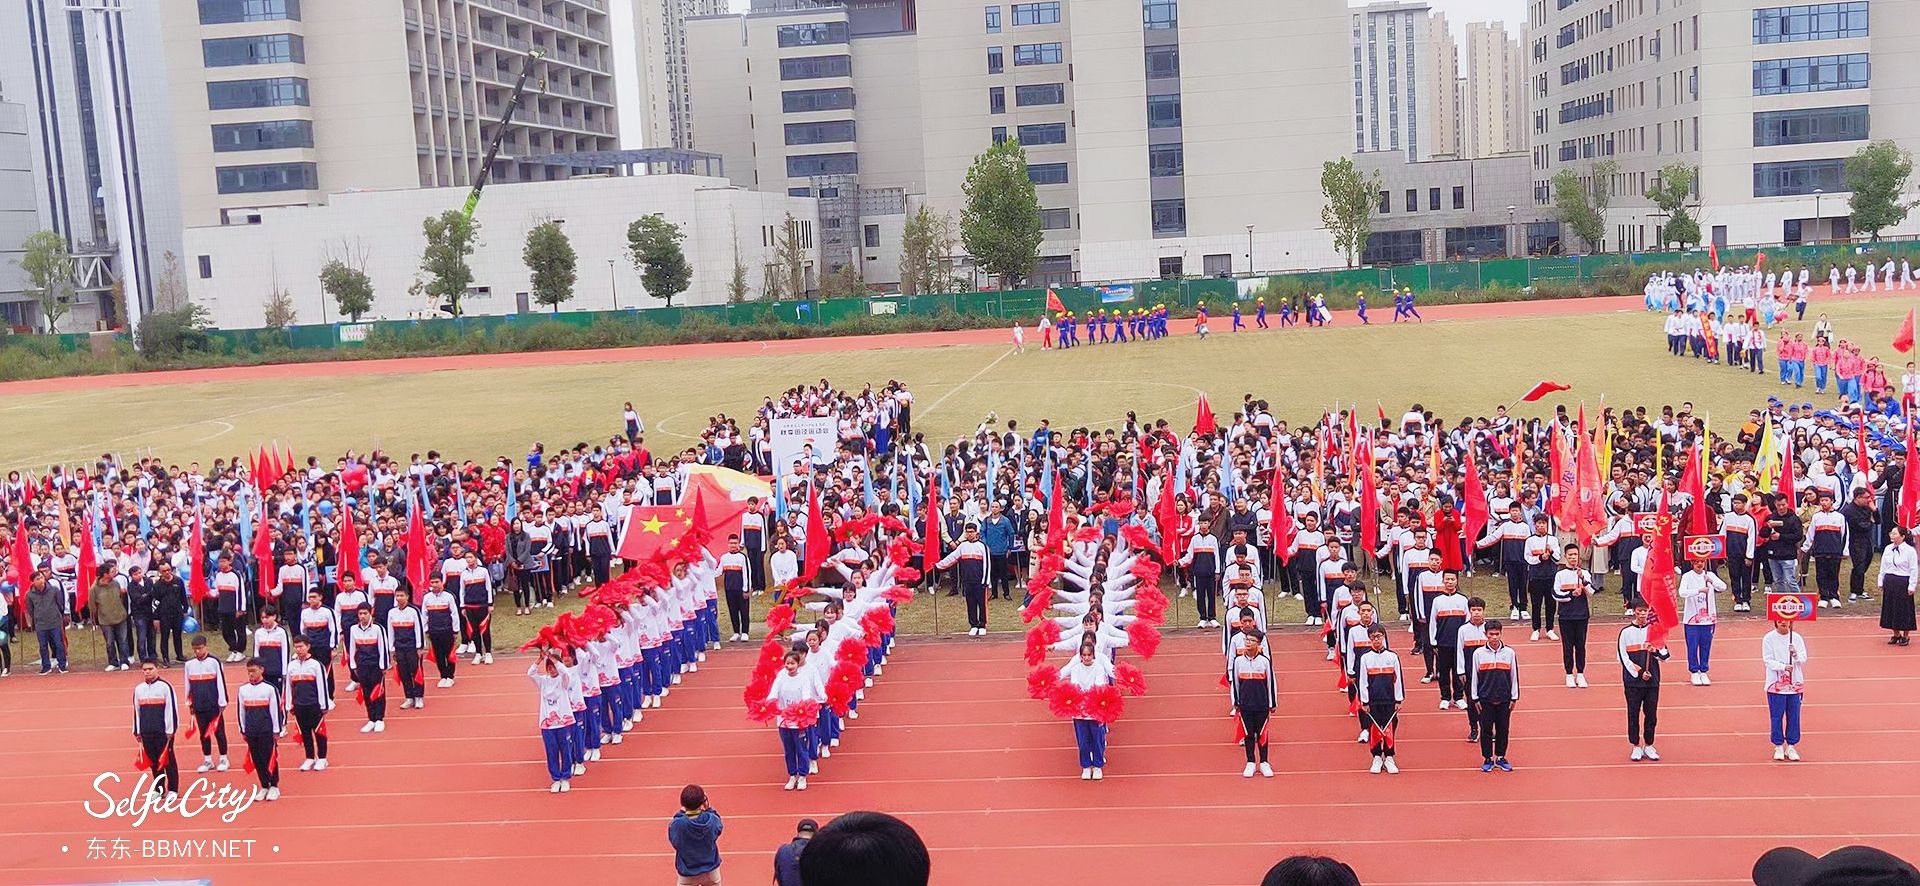 金东浩成长日记在38中学的最后一届校运会照片SelfieCity_20211112101223_org.jpg